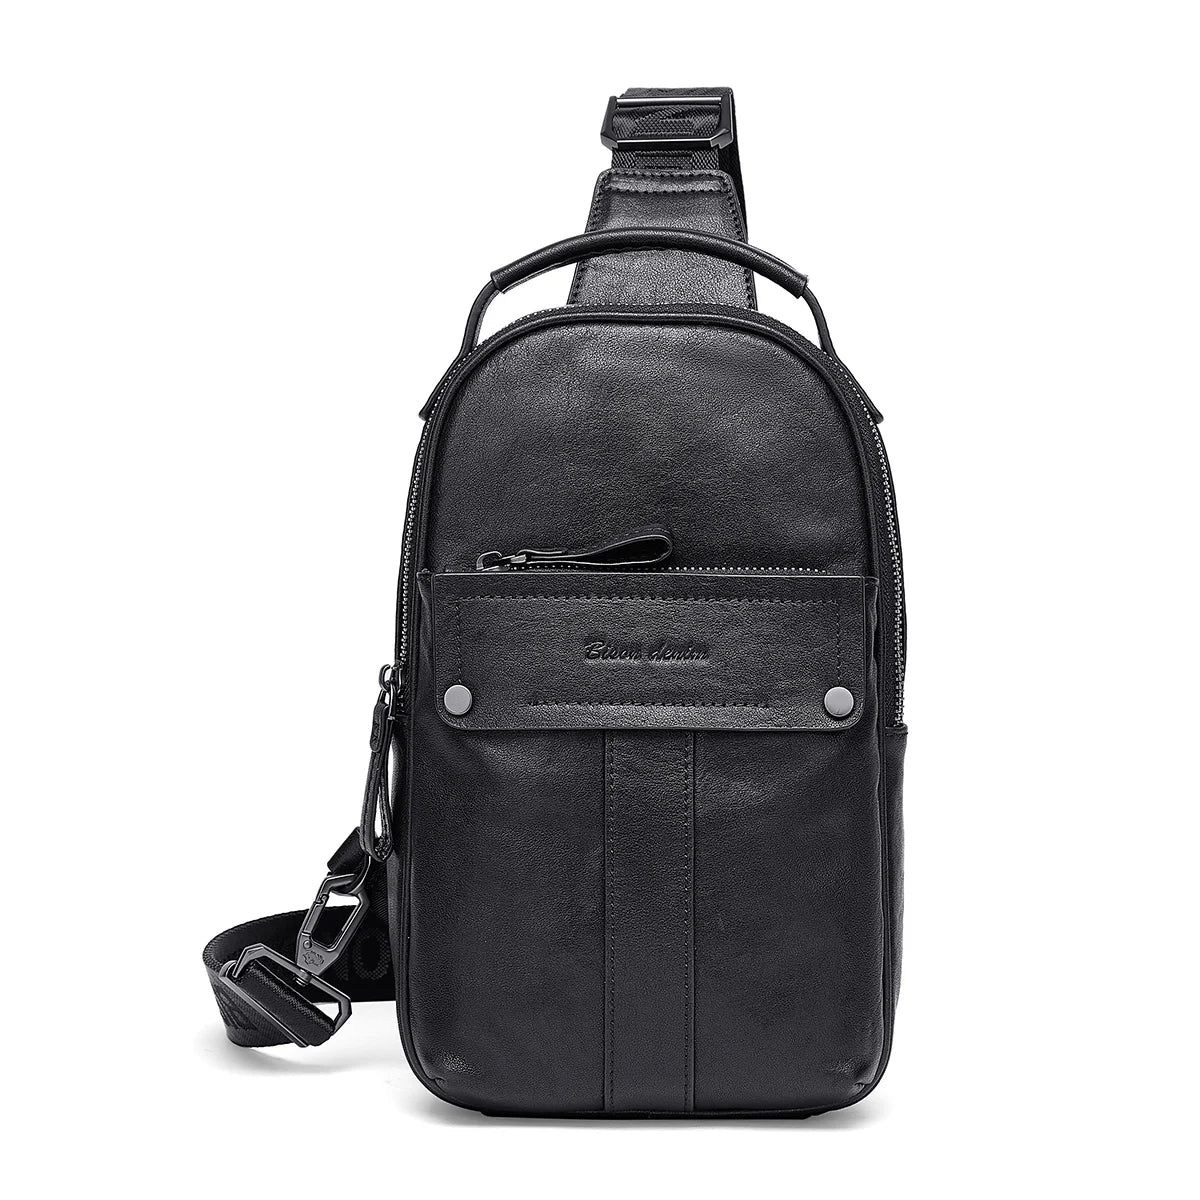 BISON DENIM New Designer Cowhide Leather Chest Bag Vintage Fashion Crossbody Men's Business Bag Travel Casual Shoulder Bag N20261 Black